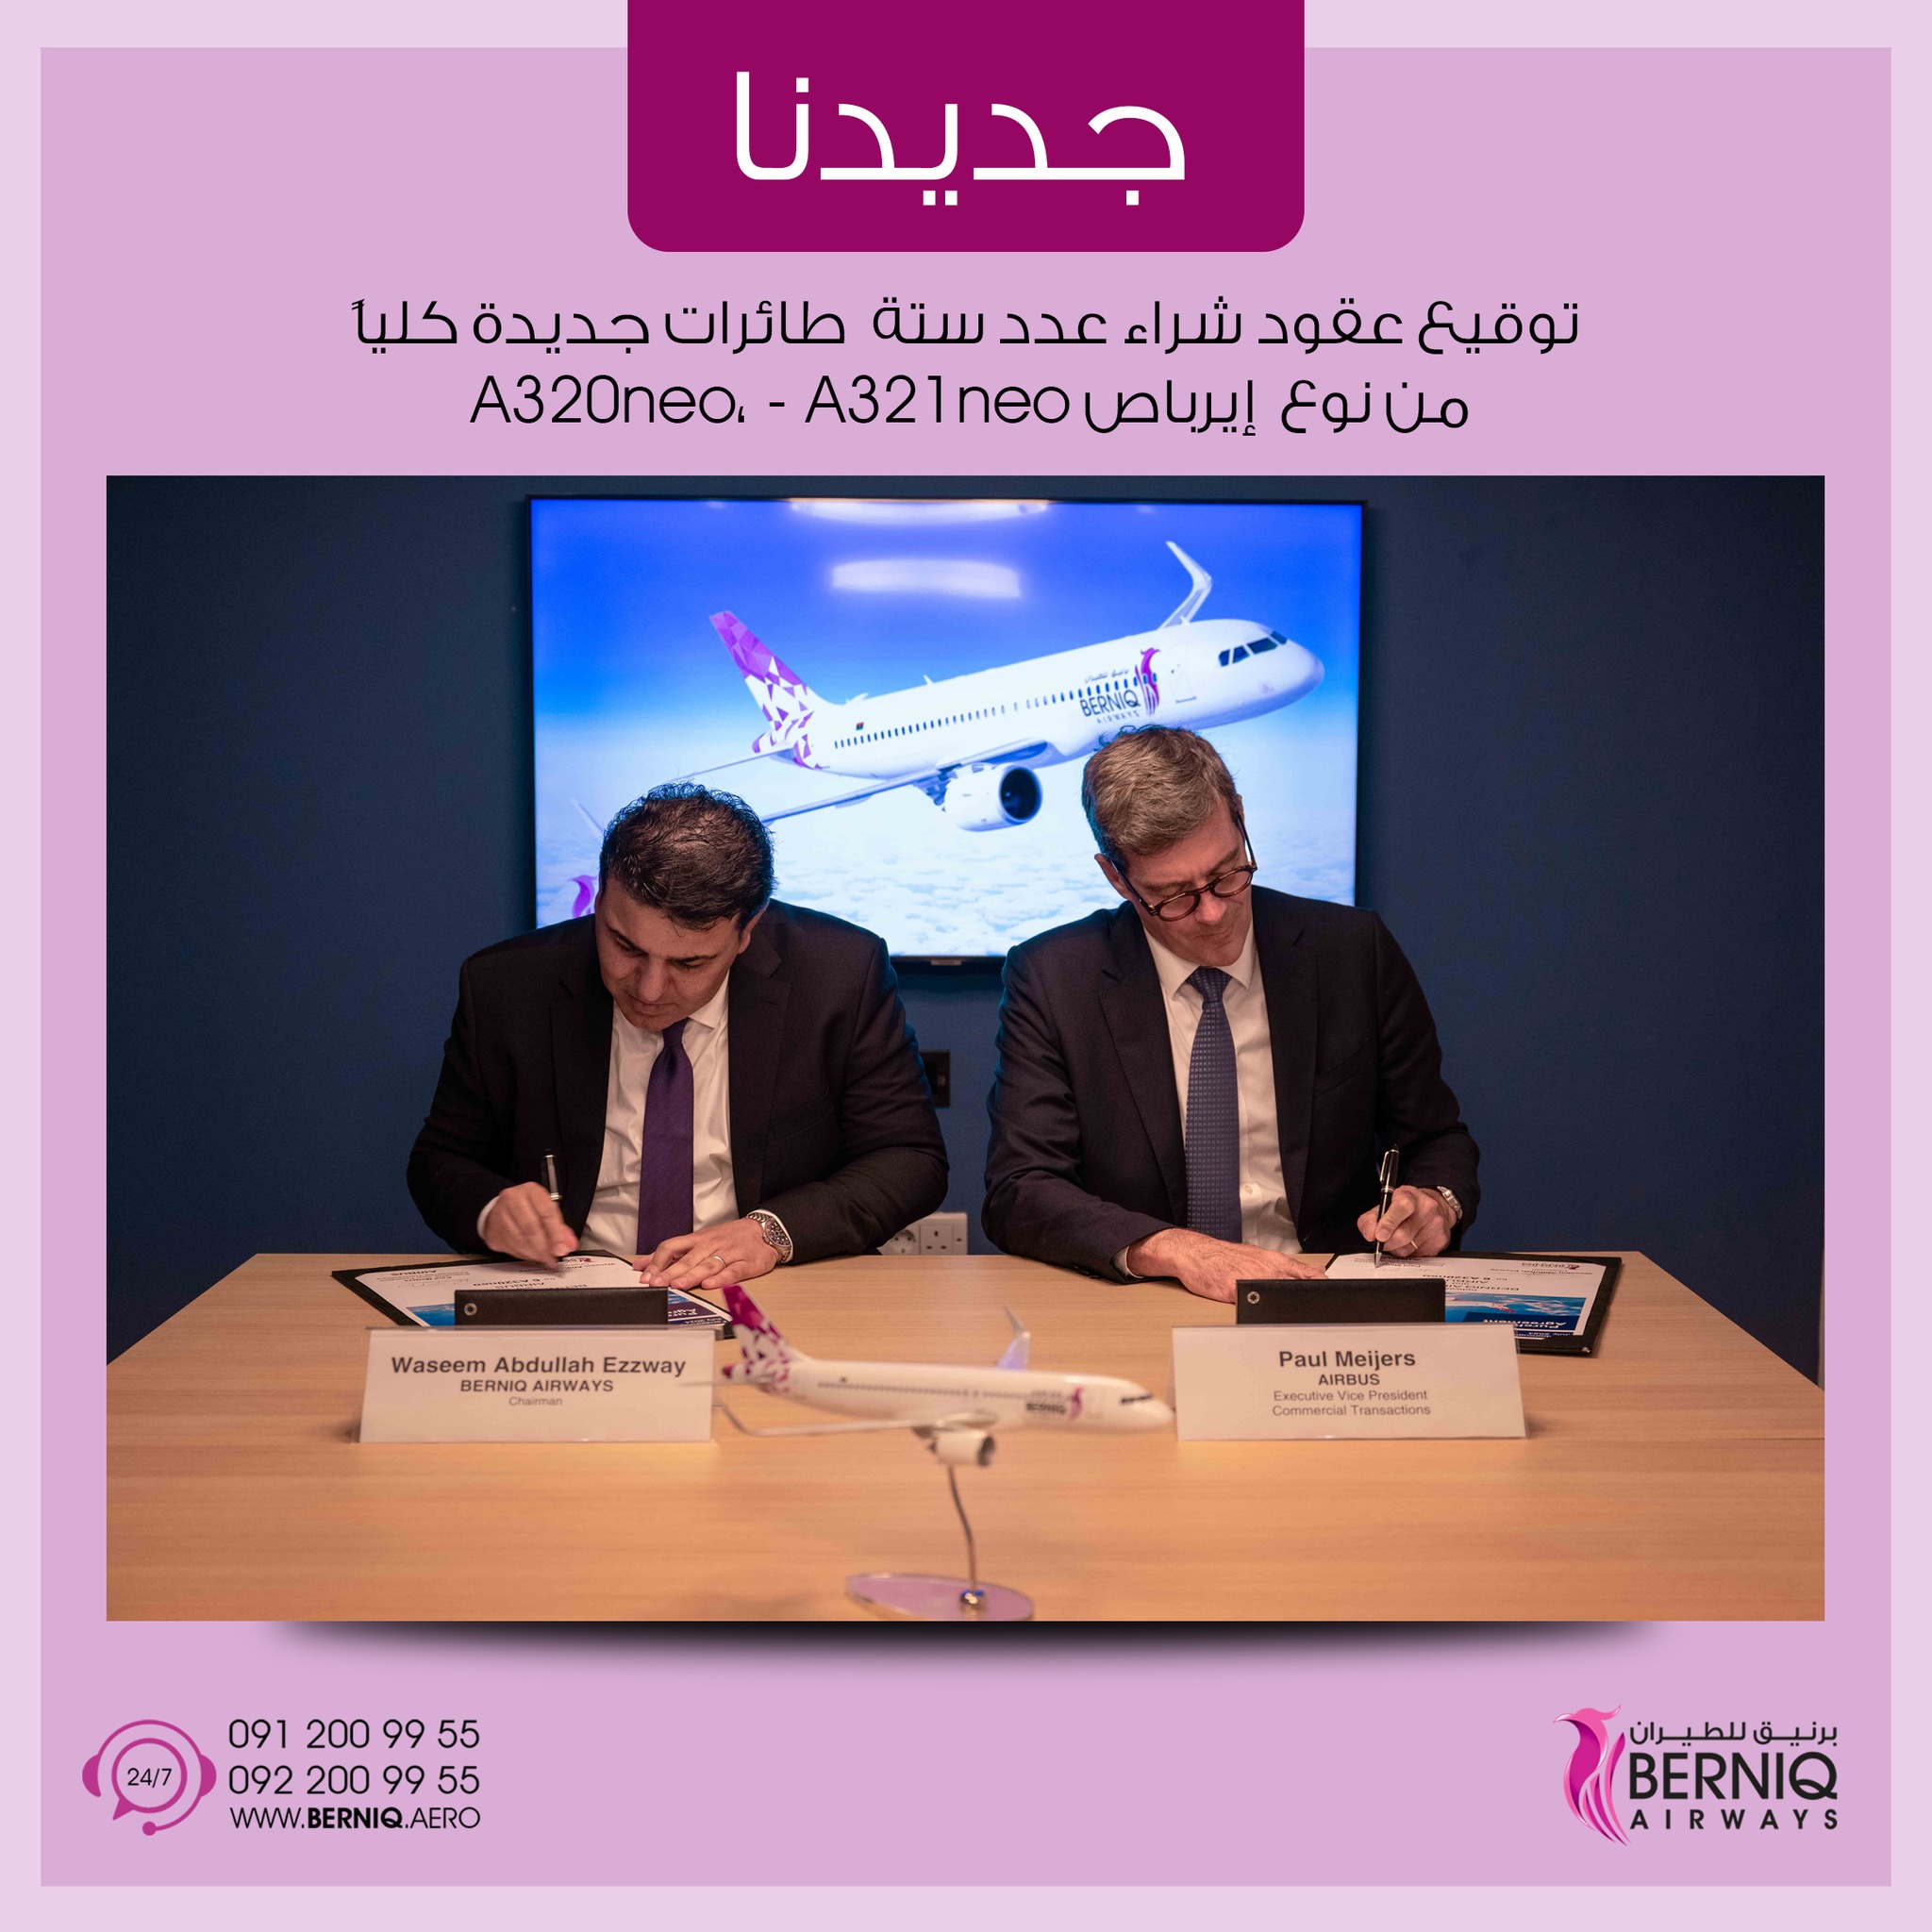 برنيق للطيران تعلن التوقيع على عقد نهائي لشراء عدد 6 طائرات جديدة من نوع إيرباص A320neo و A321neo.